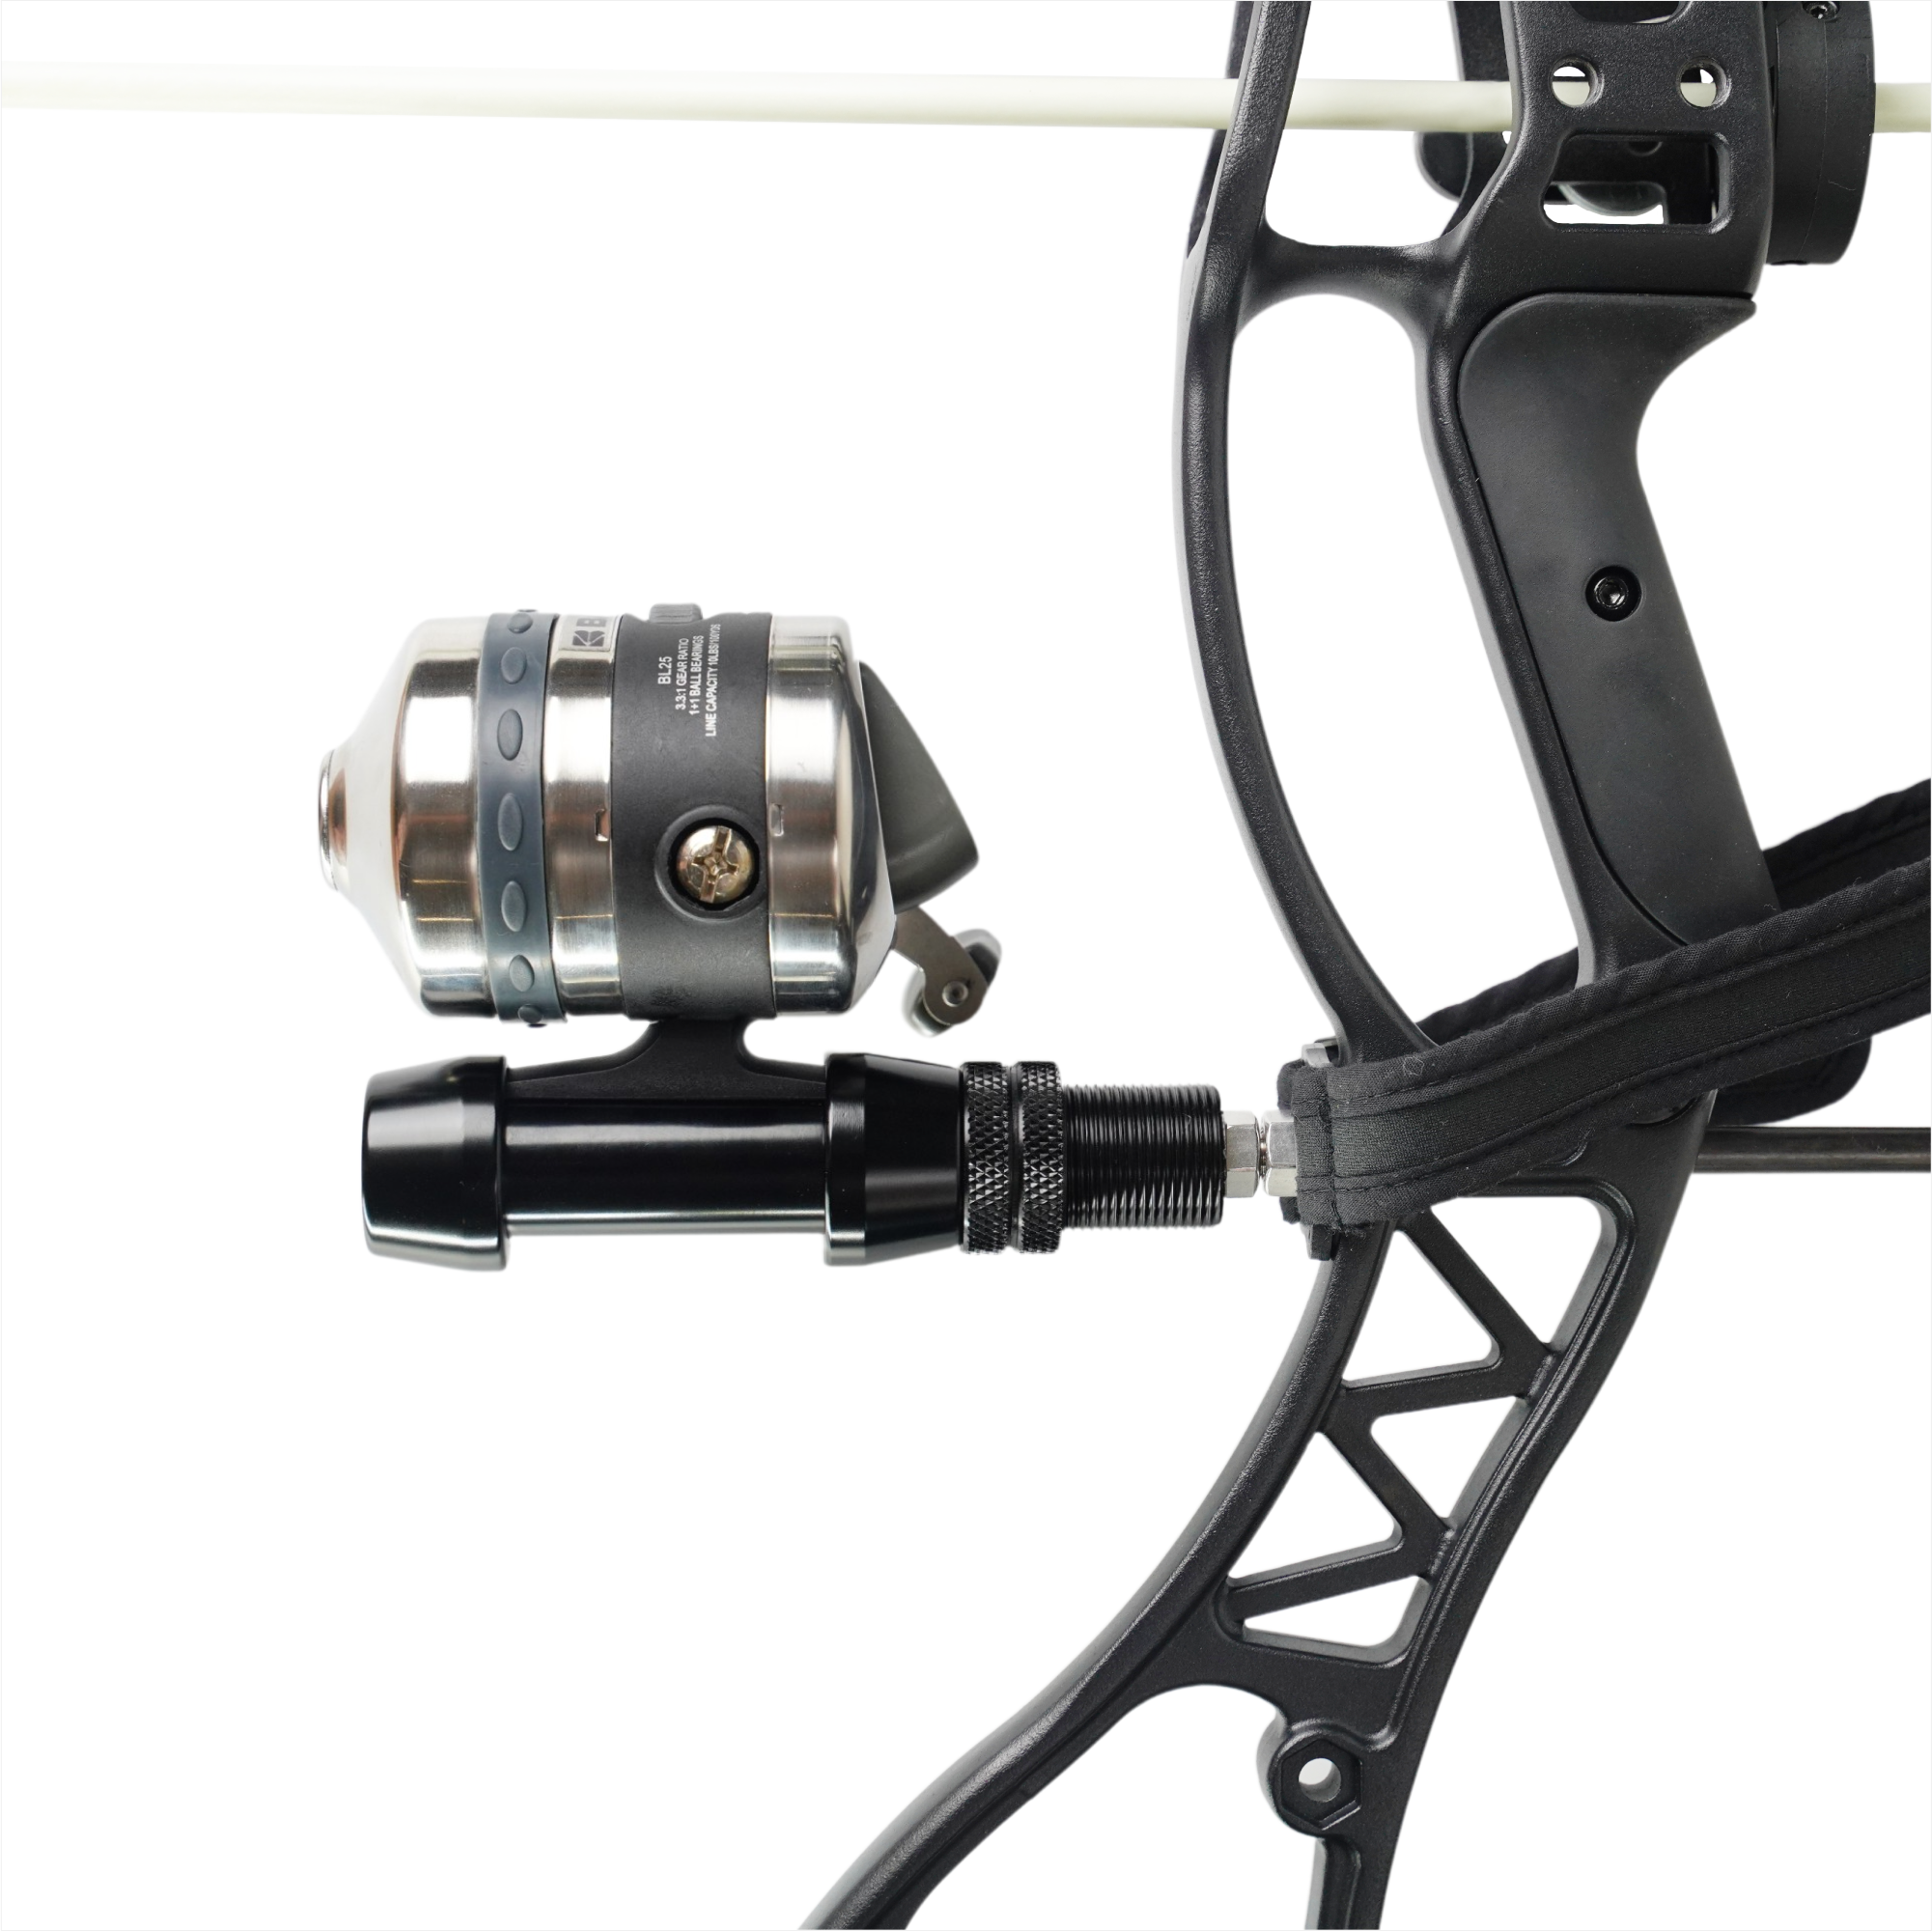 Ballista Bowfishing Reel Mount Archery Fishing Reel Seat, Size: One Size